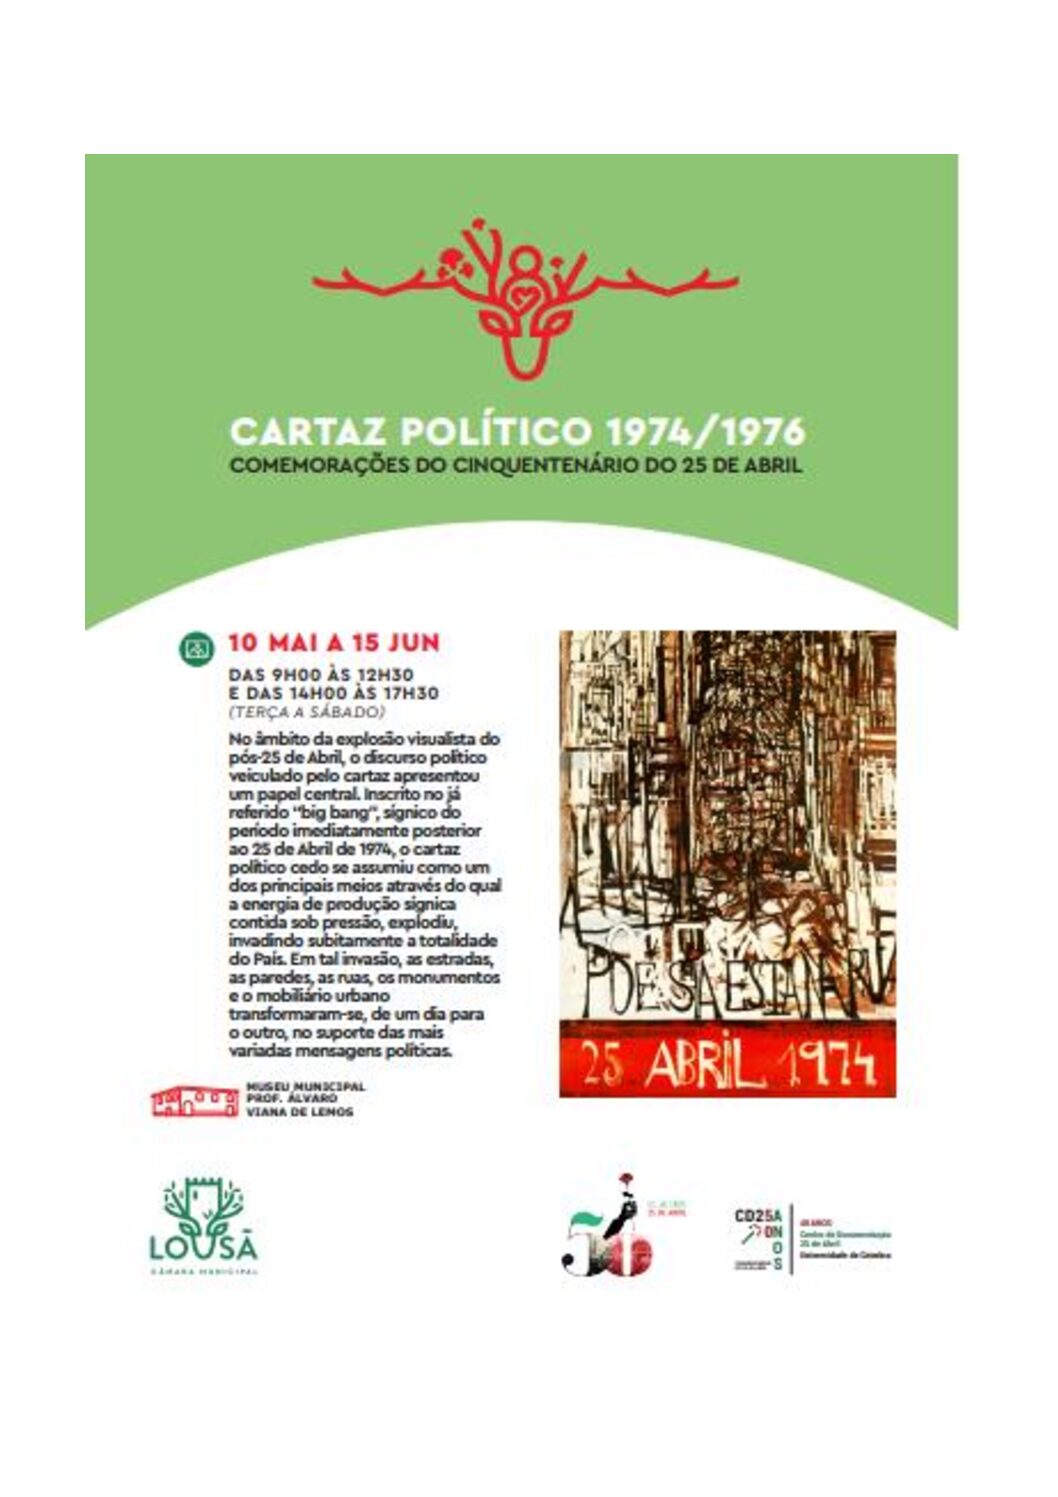 Capa Oficial do Evento Cartaz político 1974/1976